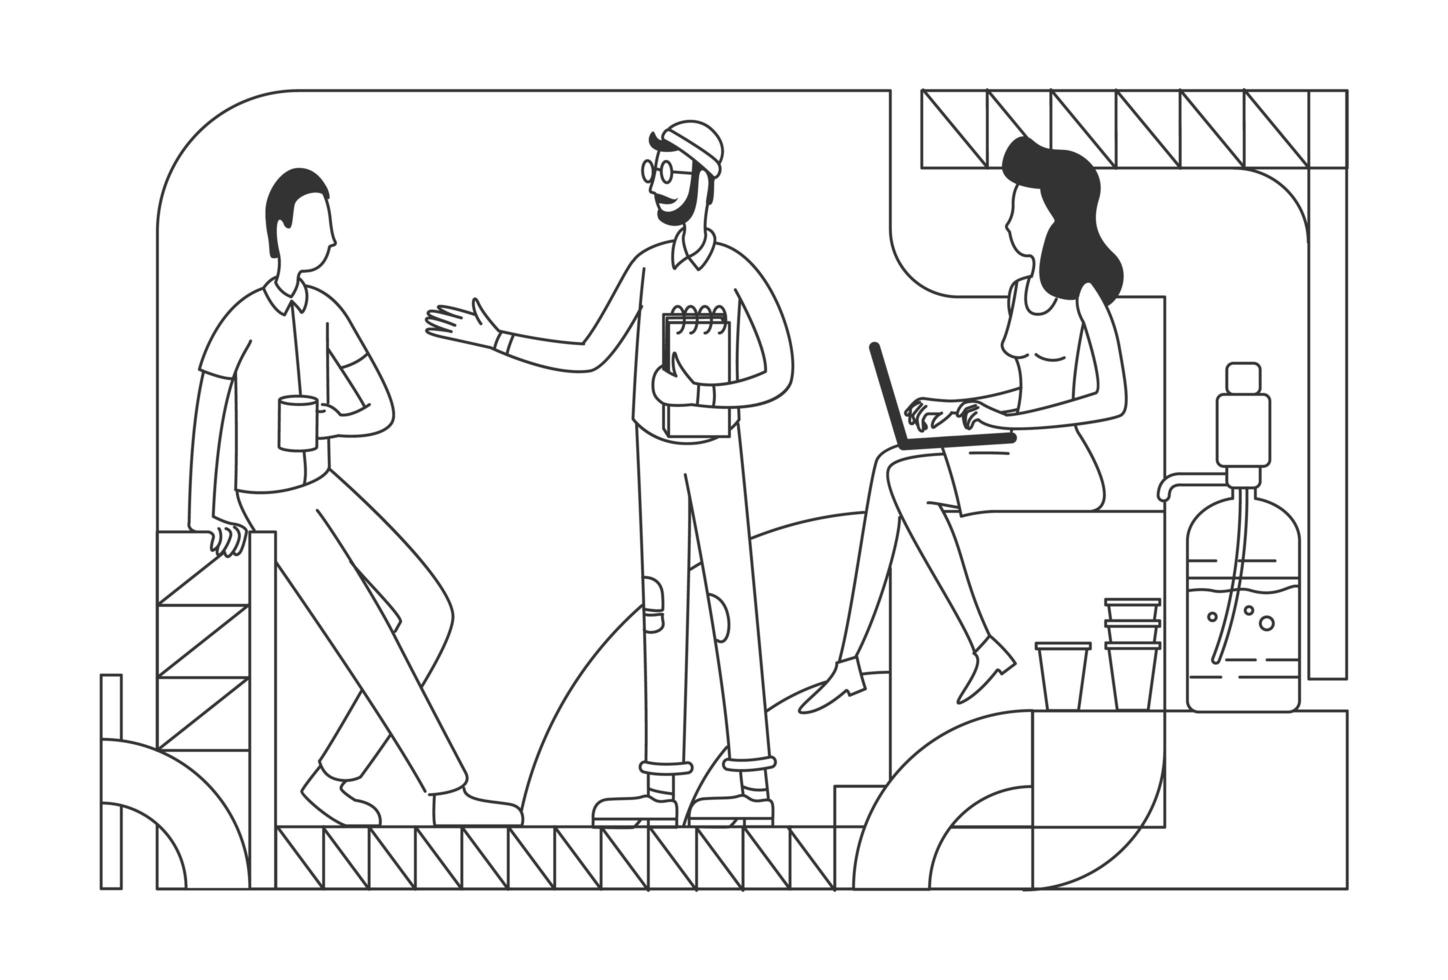 dipendenti dell'azienda in pausa caffè linea sottile illustrazione vettoriale